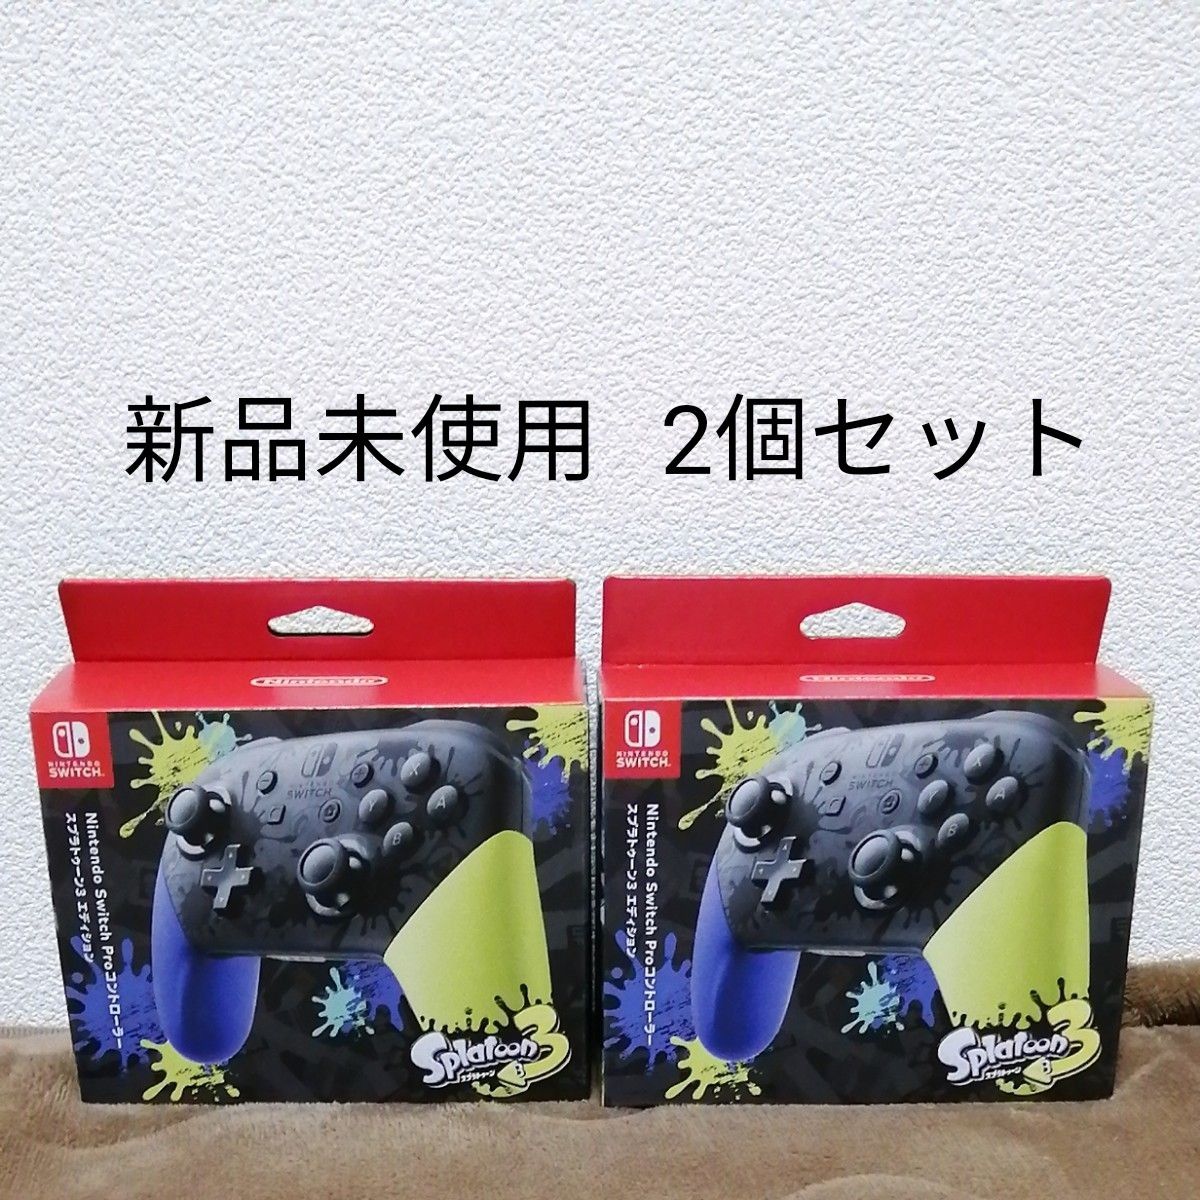 新品未開封】Nintendo Switch スプラトゥーン3 エディション lppi 